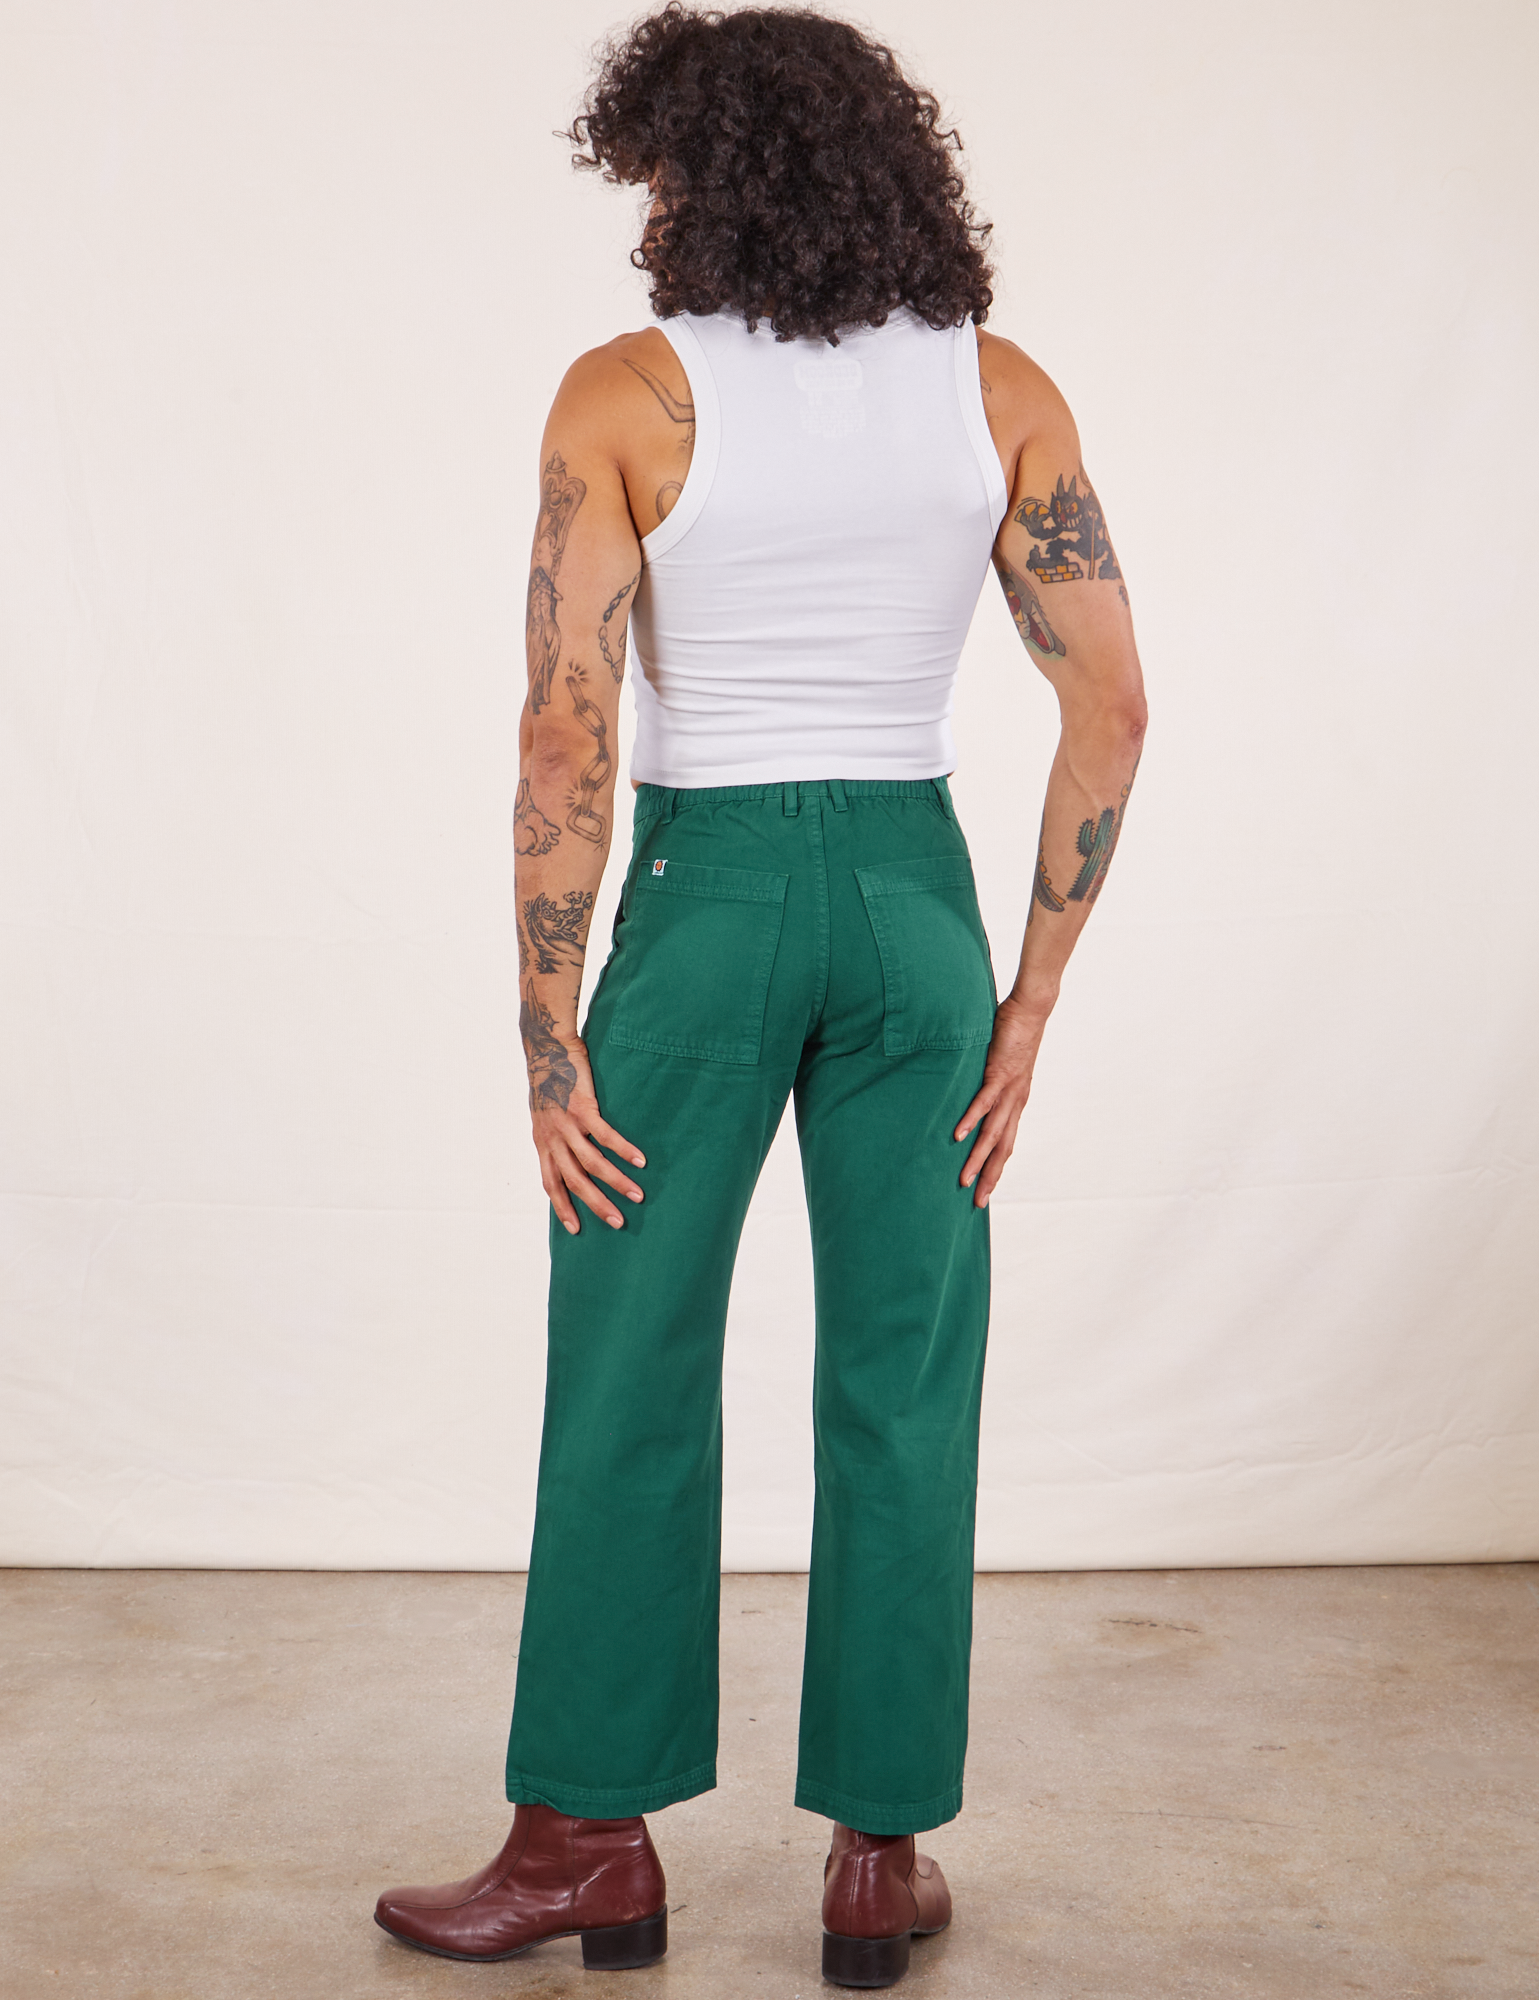 Elastic waist on pants, Green Dickies 874 Work Pants